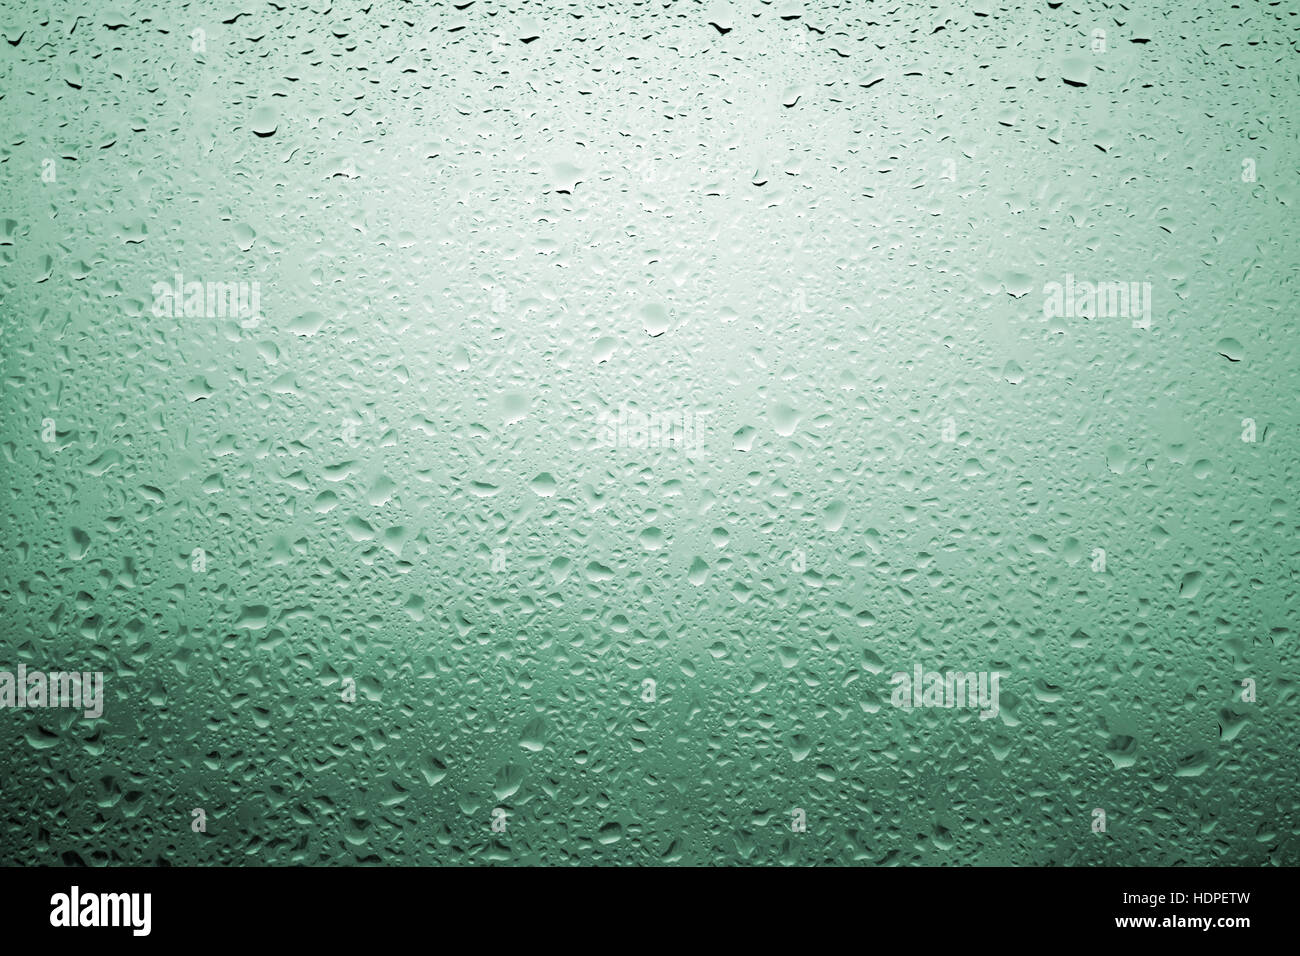 Gouttes de pluie sur une vitre de fenêtre avec paysage très diffuse de couleur vert bleuâtre Banque D'Images